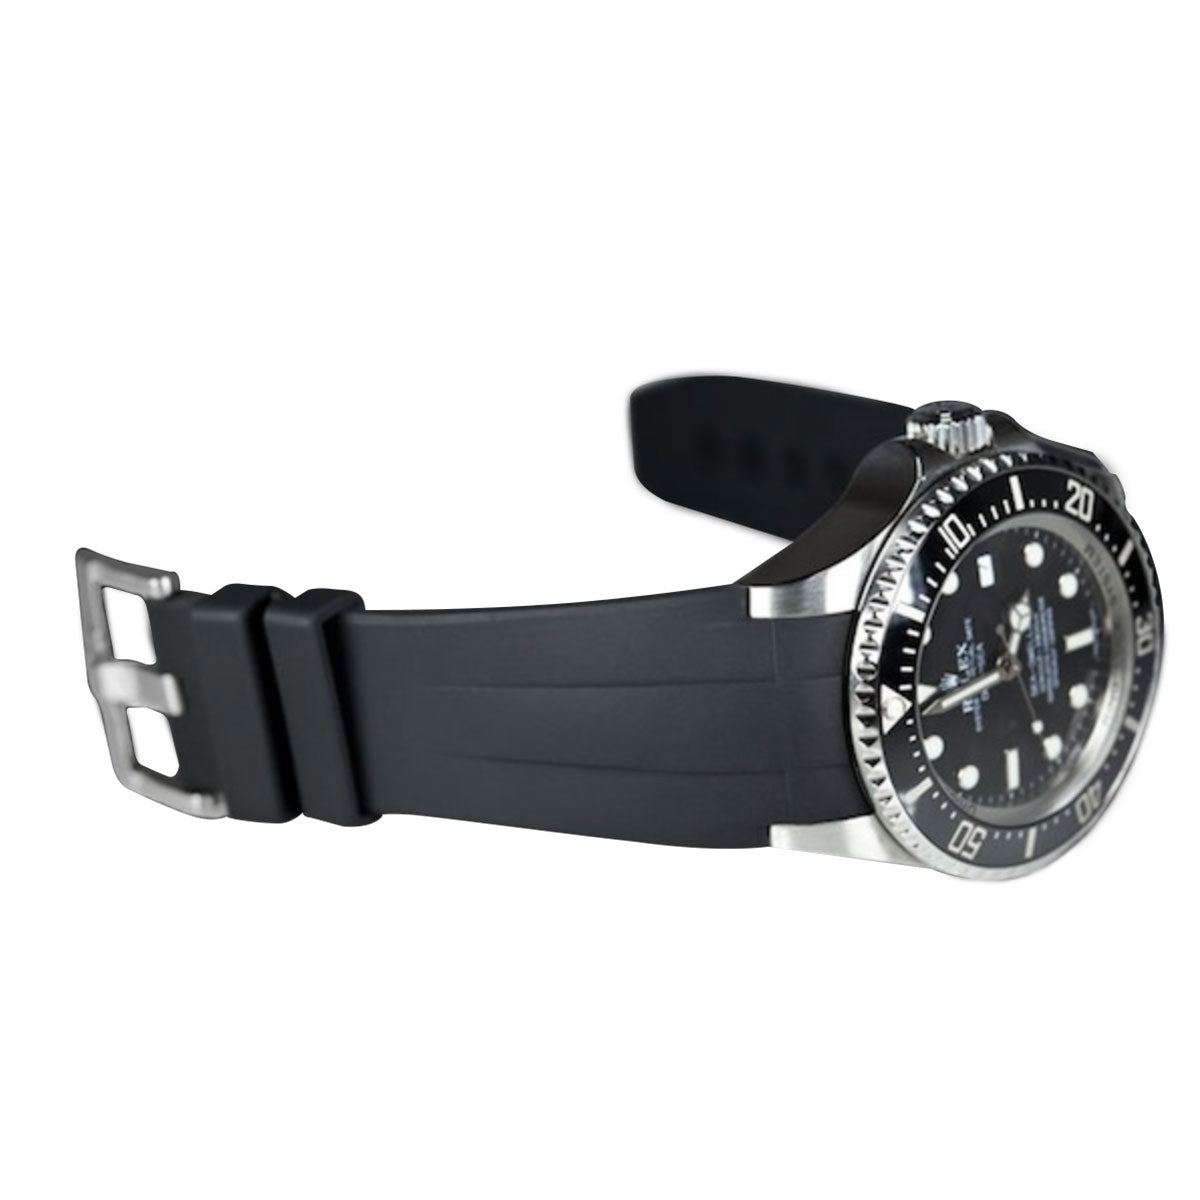 Rolex - Rubber B - Bracelet caoutchouc pour Deepsea 116660 - Série boucle ardillon - watch band leather strap - ABP Concept -